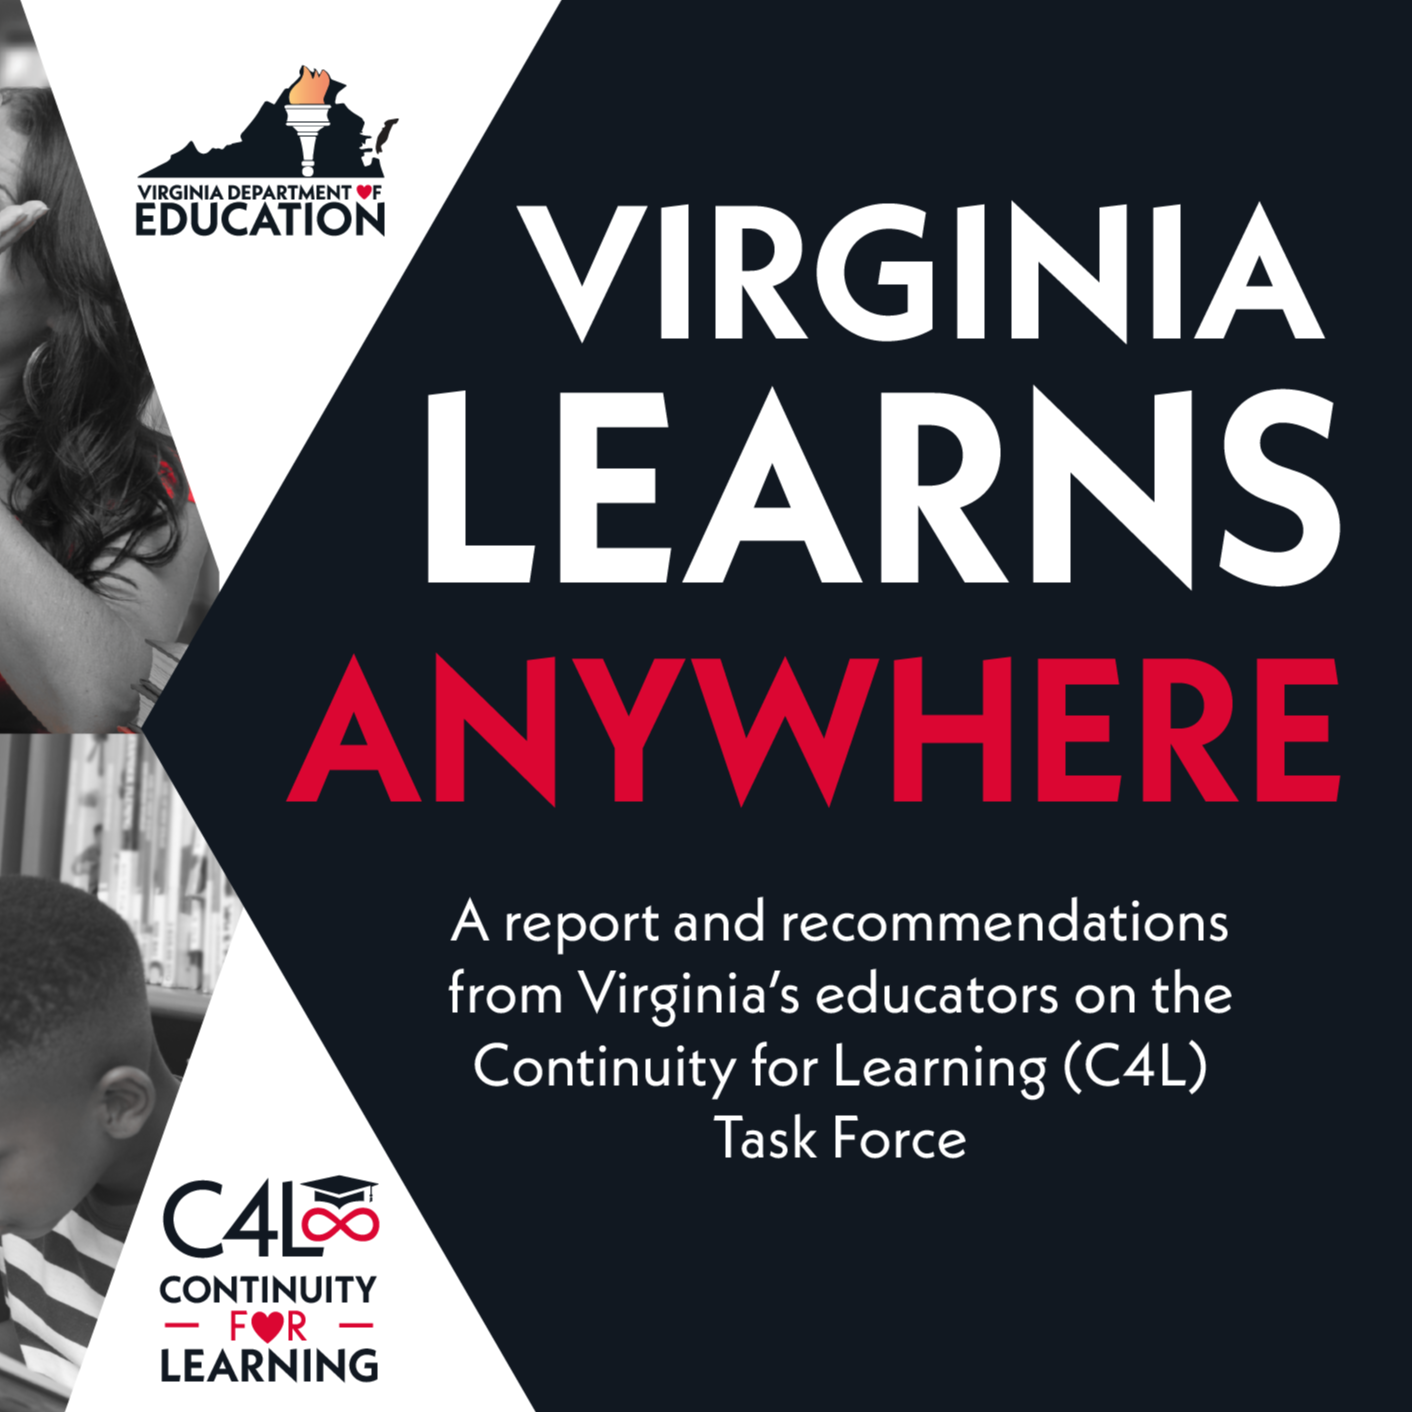 Virginia Learns Anywhere